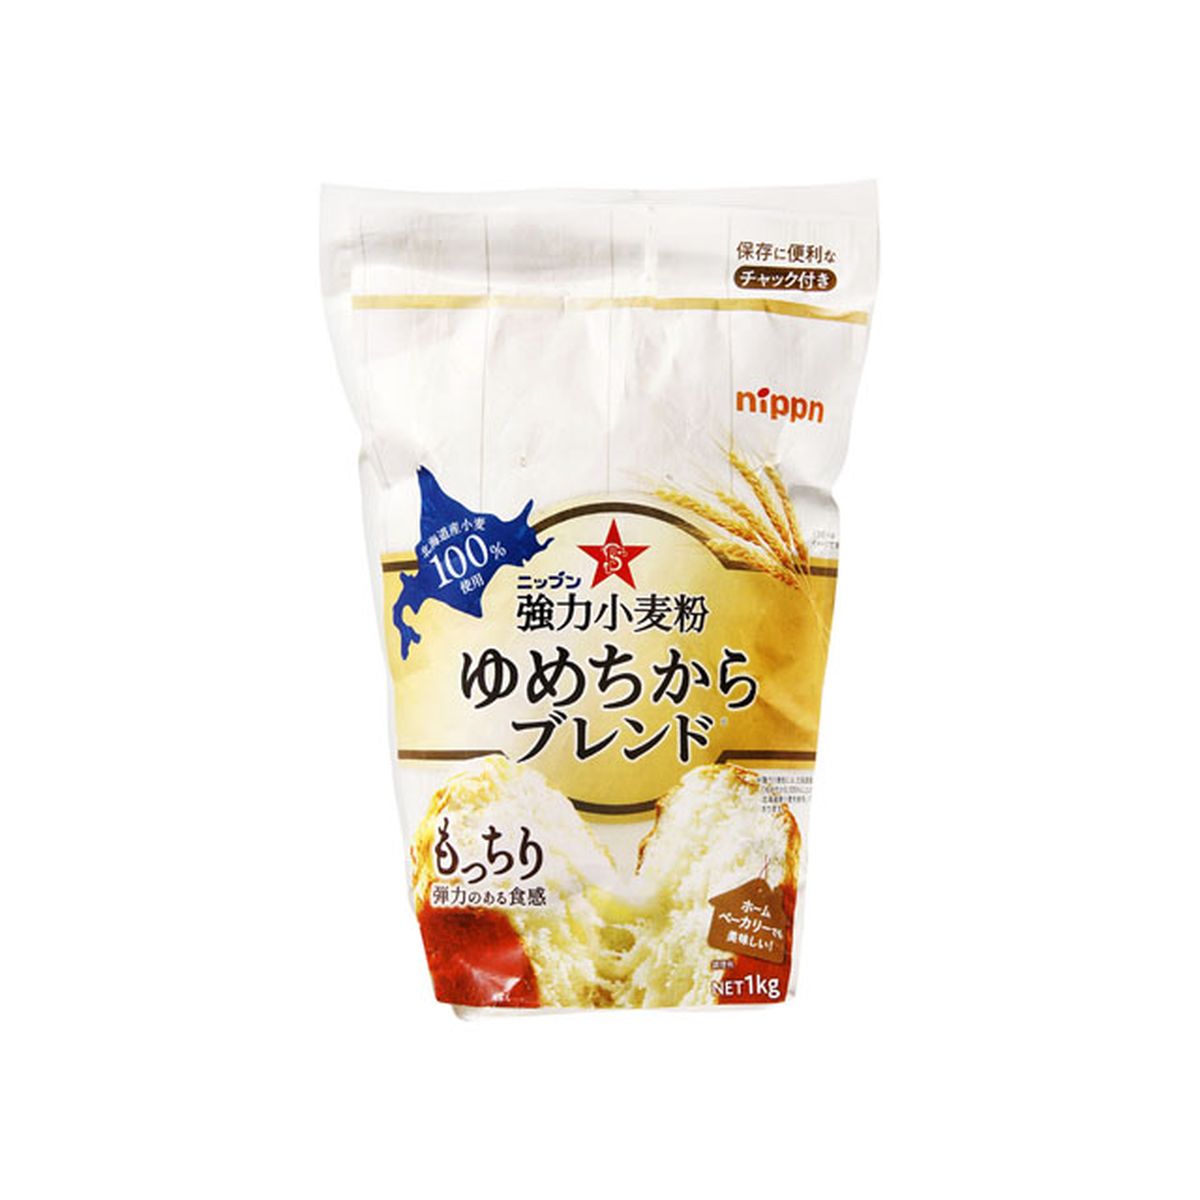 【12個入り】日本製粉 強力小麦粉 ゆめちからブレンド 1Kg